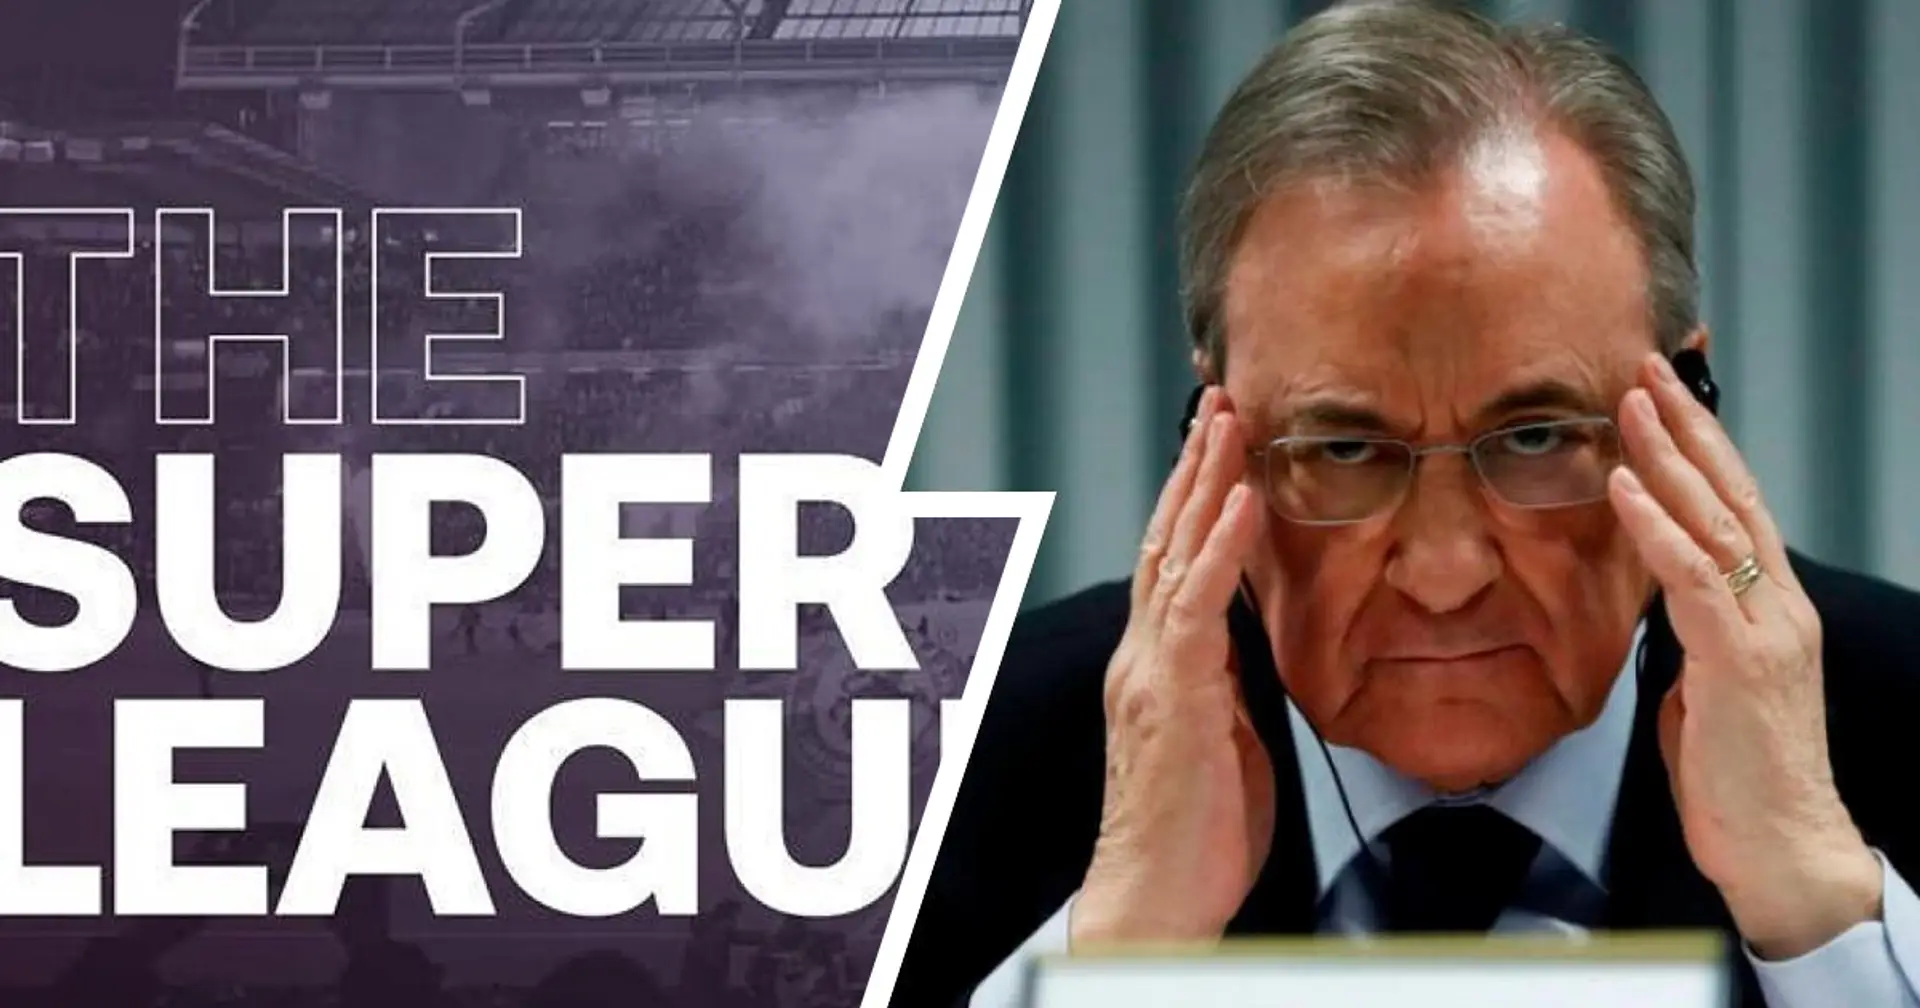 Kehrt die Super League bald zurück? Real Madrid gewinnt den "richtungsweisenden" Rechtsstreit gegen die UEFA